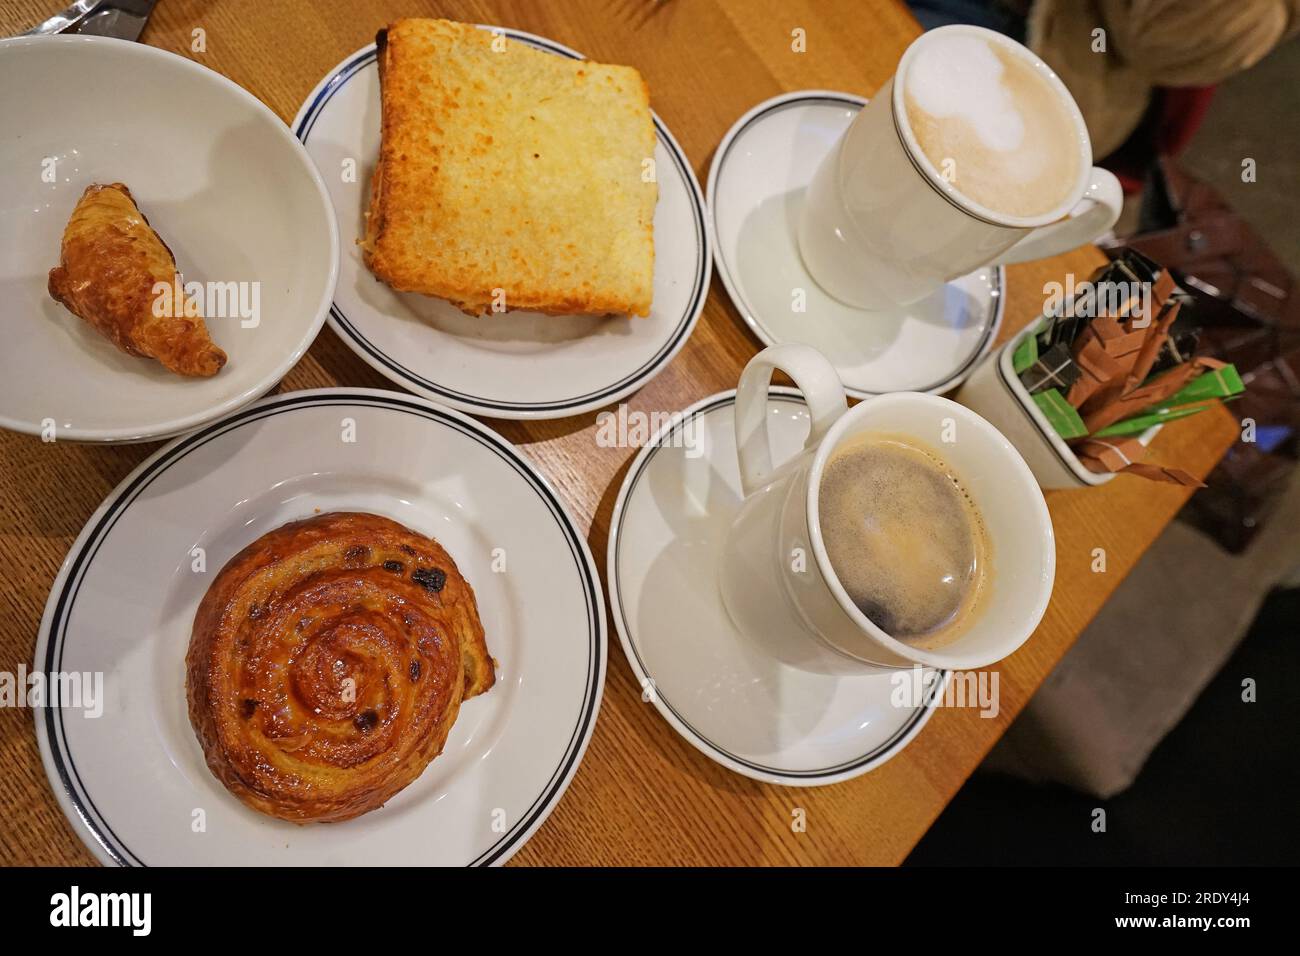 Heißer schwarzer Americano- und Cappuccino-Kaffee mit Croque monsieur, Mini-Croissant und dänischem Brötchen Stockfoto